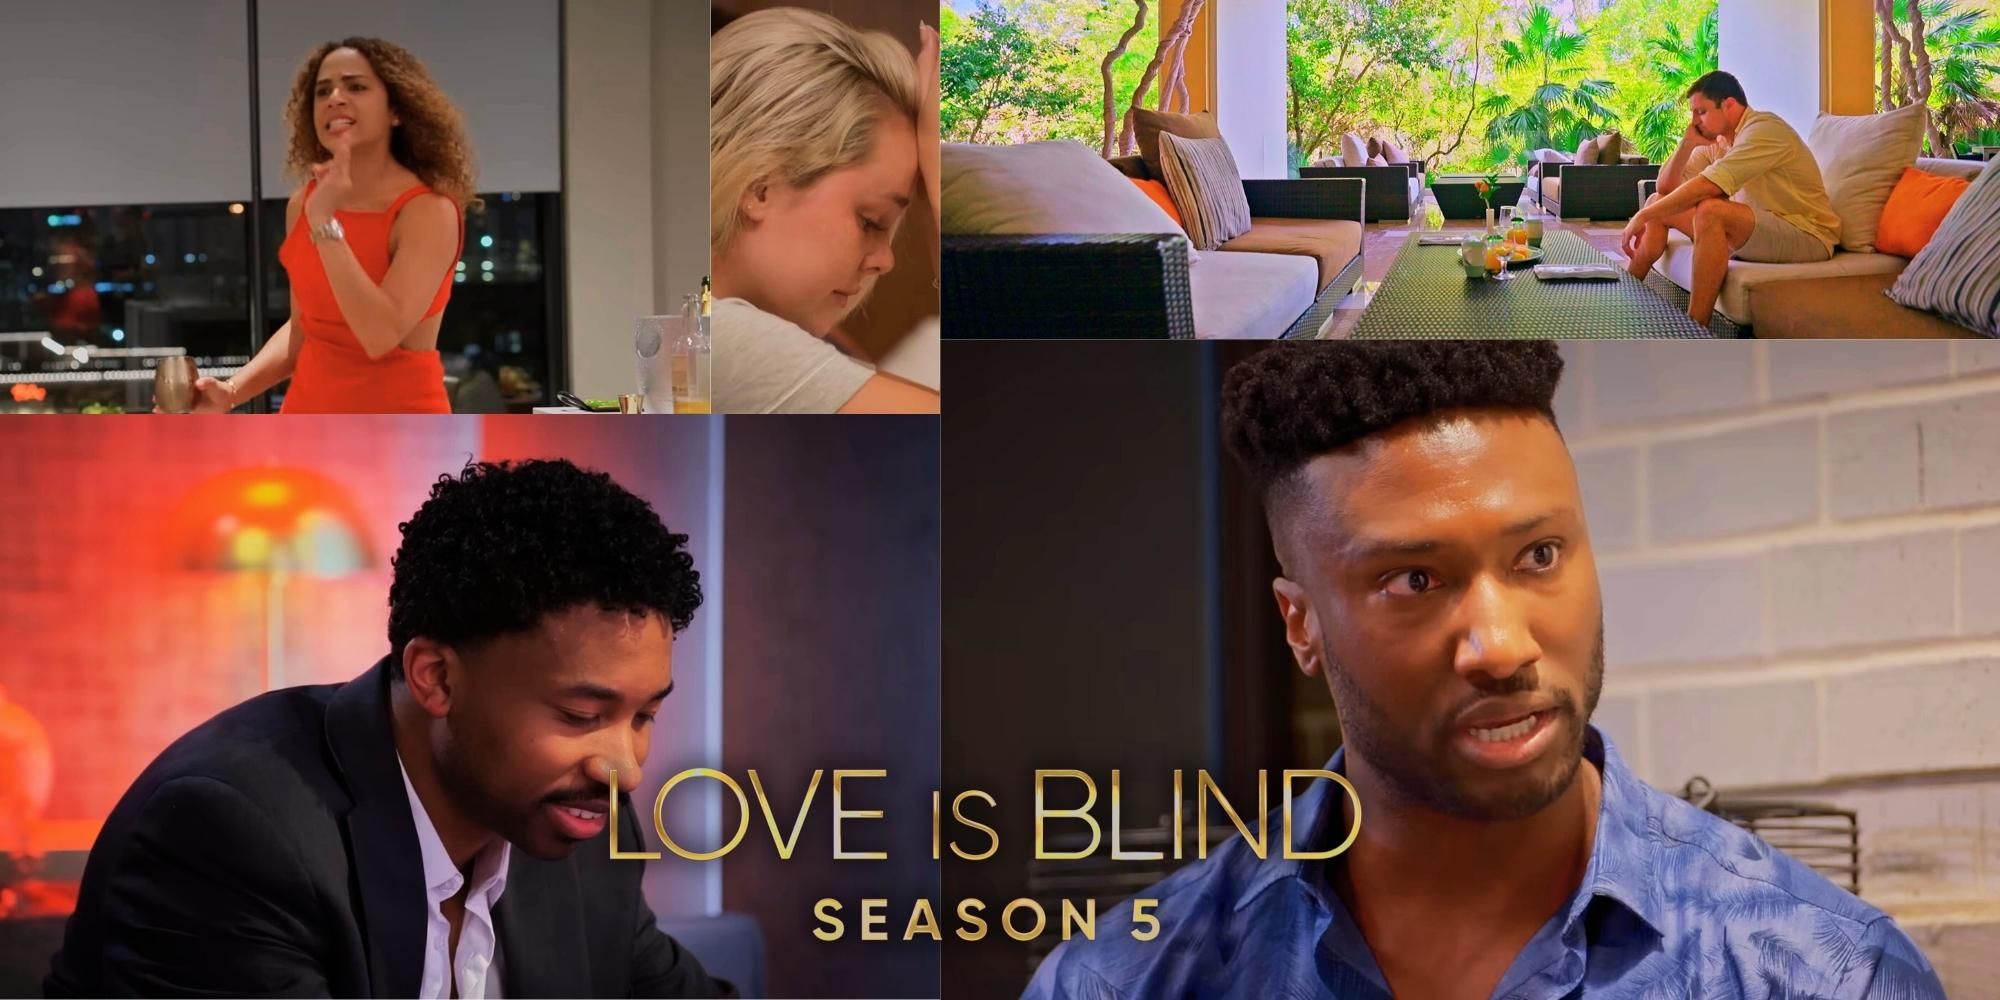 ¿Será la temporada 5 de Love Is Blind la mejor temporada hasta ahora?  (Este productor así lo cree)